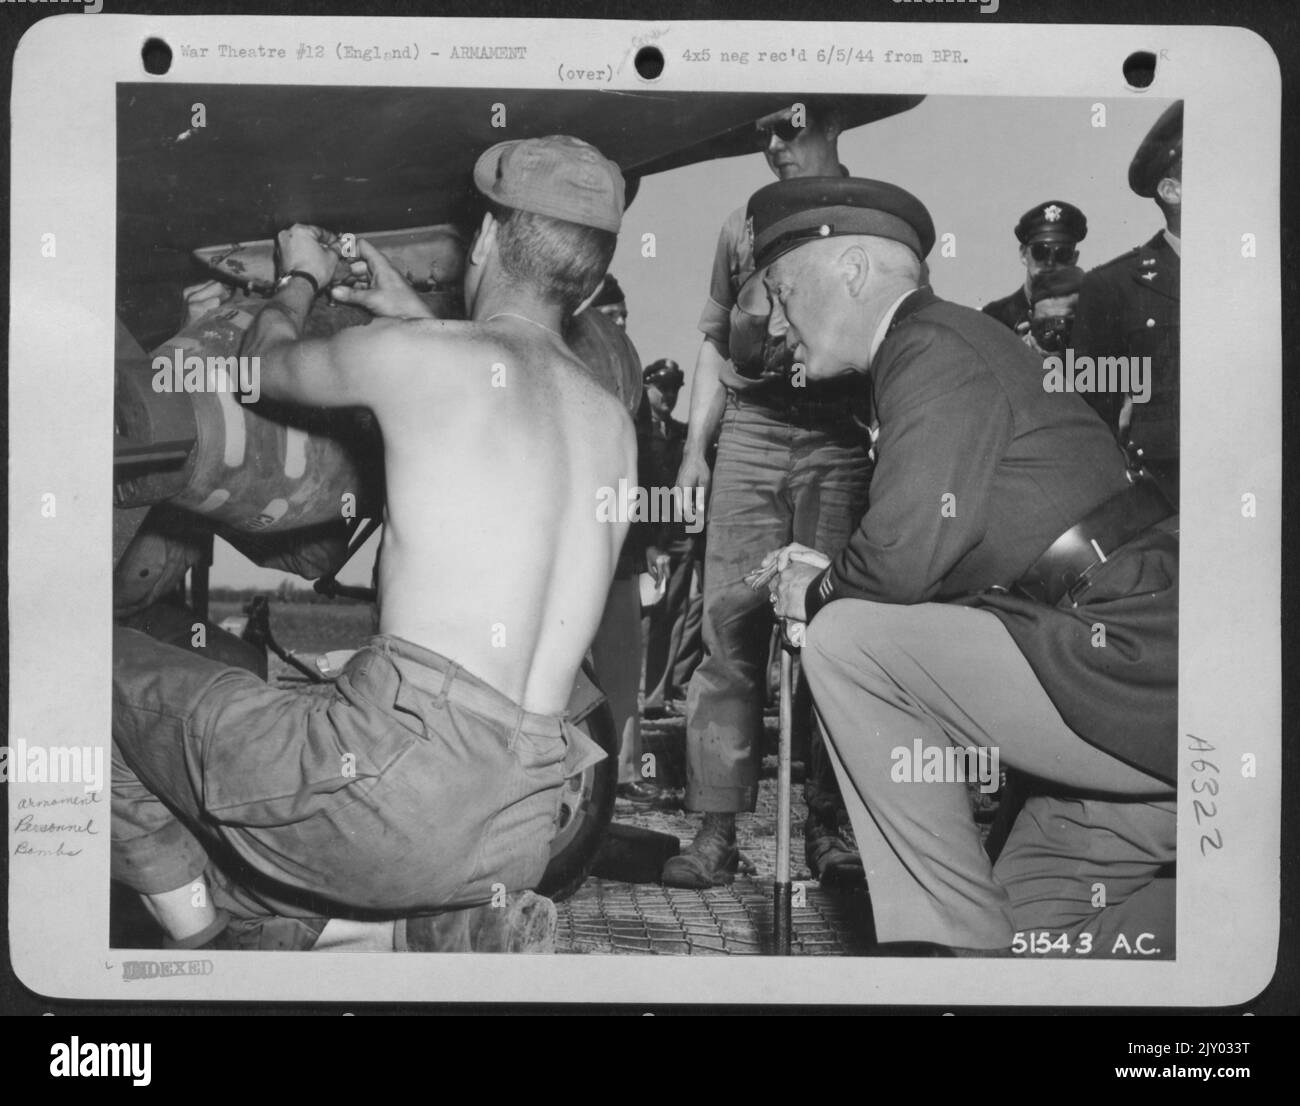 Eine NEUNTE LUFTWAFFENJÄGERSTATION, England:--- LT. General George „Blood and Guts“ Patton, der eine 9. AF Mustang Fighter-Bomber-Basis besucht, ist an der Panzerung dieser schnell harten P-51s interessiert. General Patton wird von Sgt gezeigt. Leroy Stokes Stockfoto